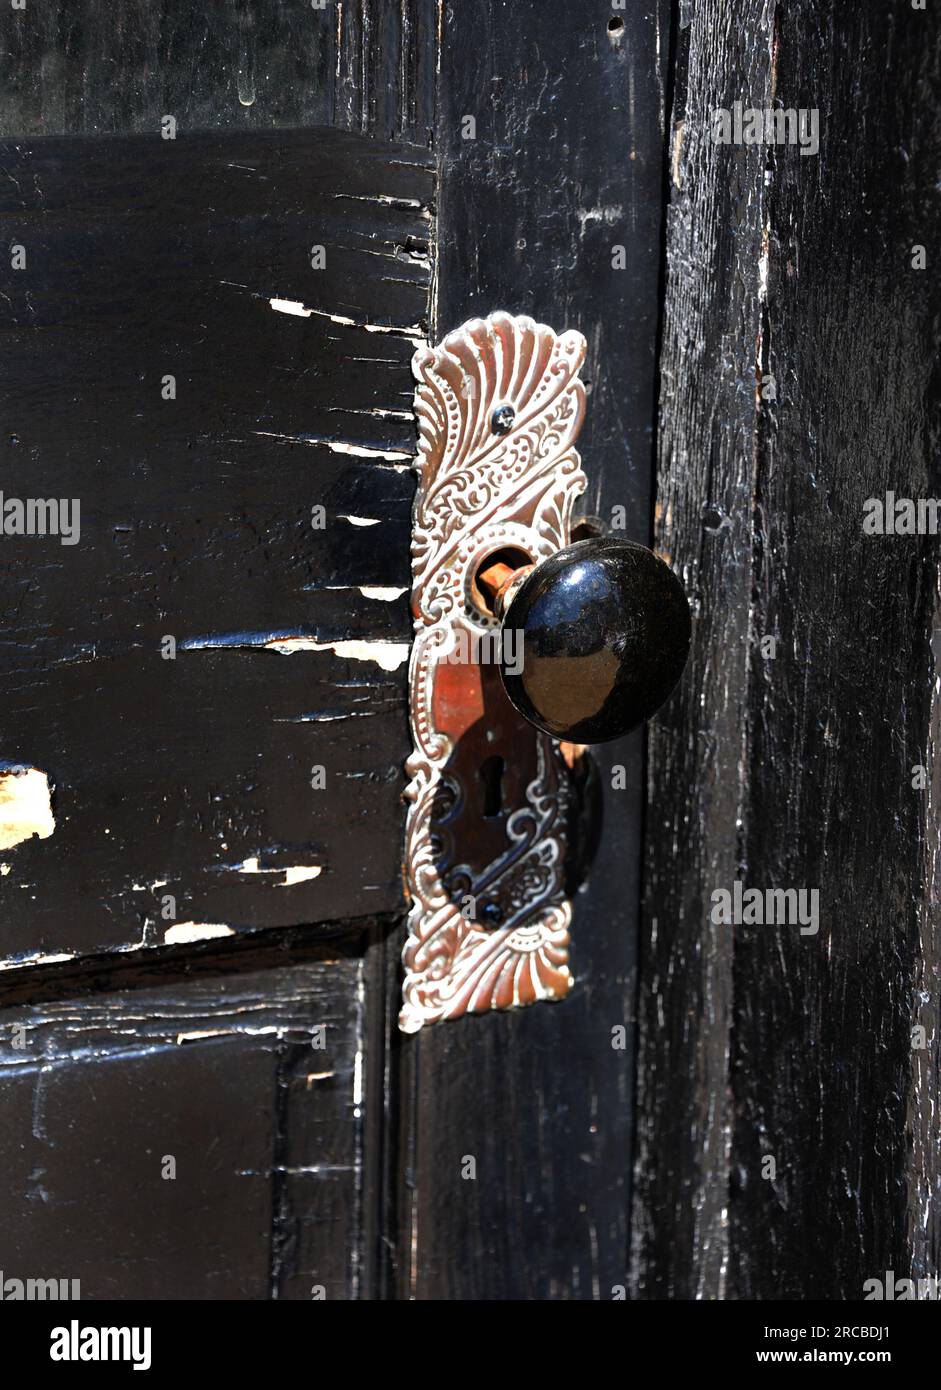 La puerta de madera deteriorada es de color negro trenzado. La pintura se está pelando y la madera está agrietada. La placa de la puerta antigua y la perilla están fijadas a la puerta. Diseño intrincado Foto de stock